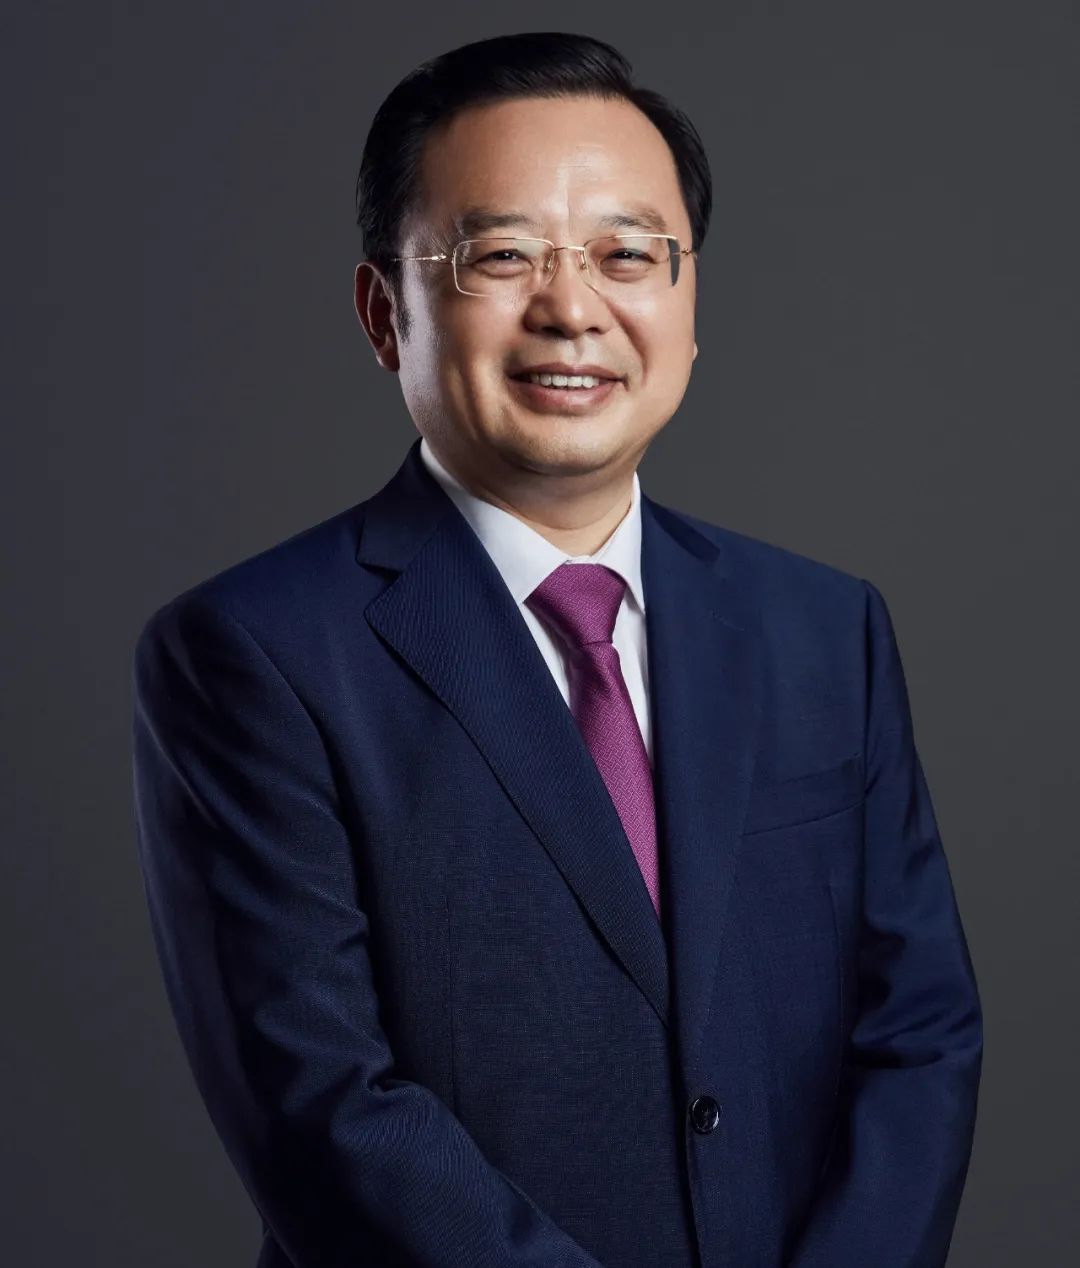 中欧基金总经理刘建平提升软实力升级硬体系打造卓越组织